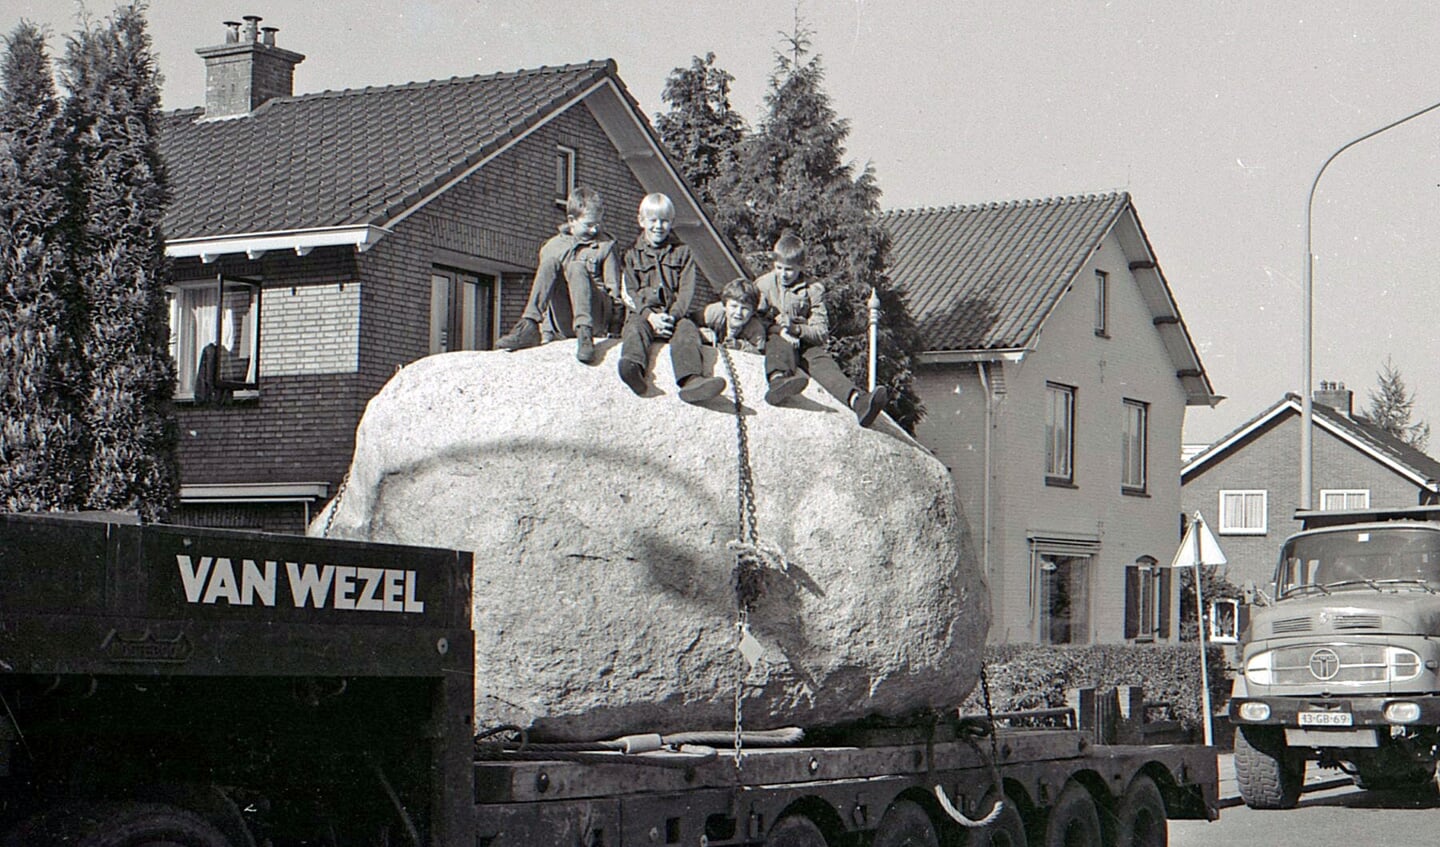 In 1984 werd de kei geplaatst door de firma van Wezel. Foto: Peter Rhebergen